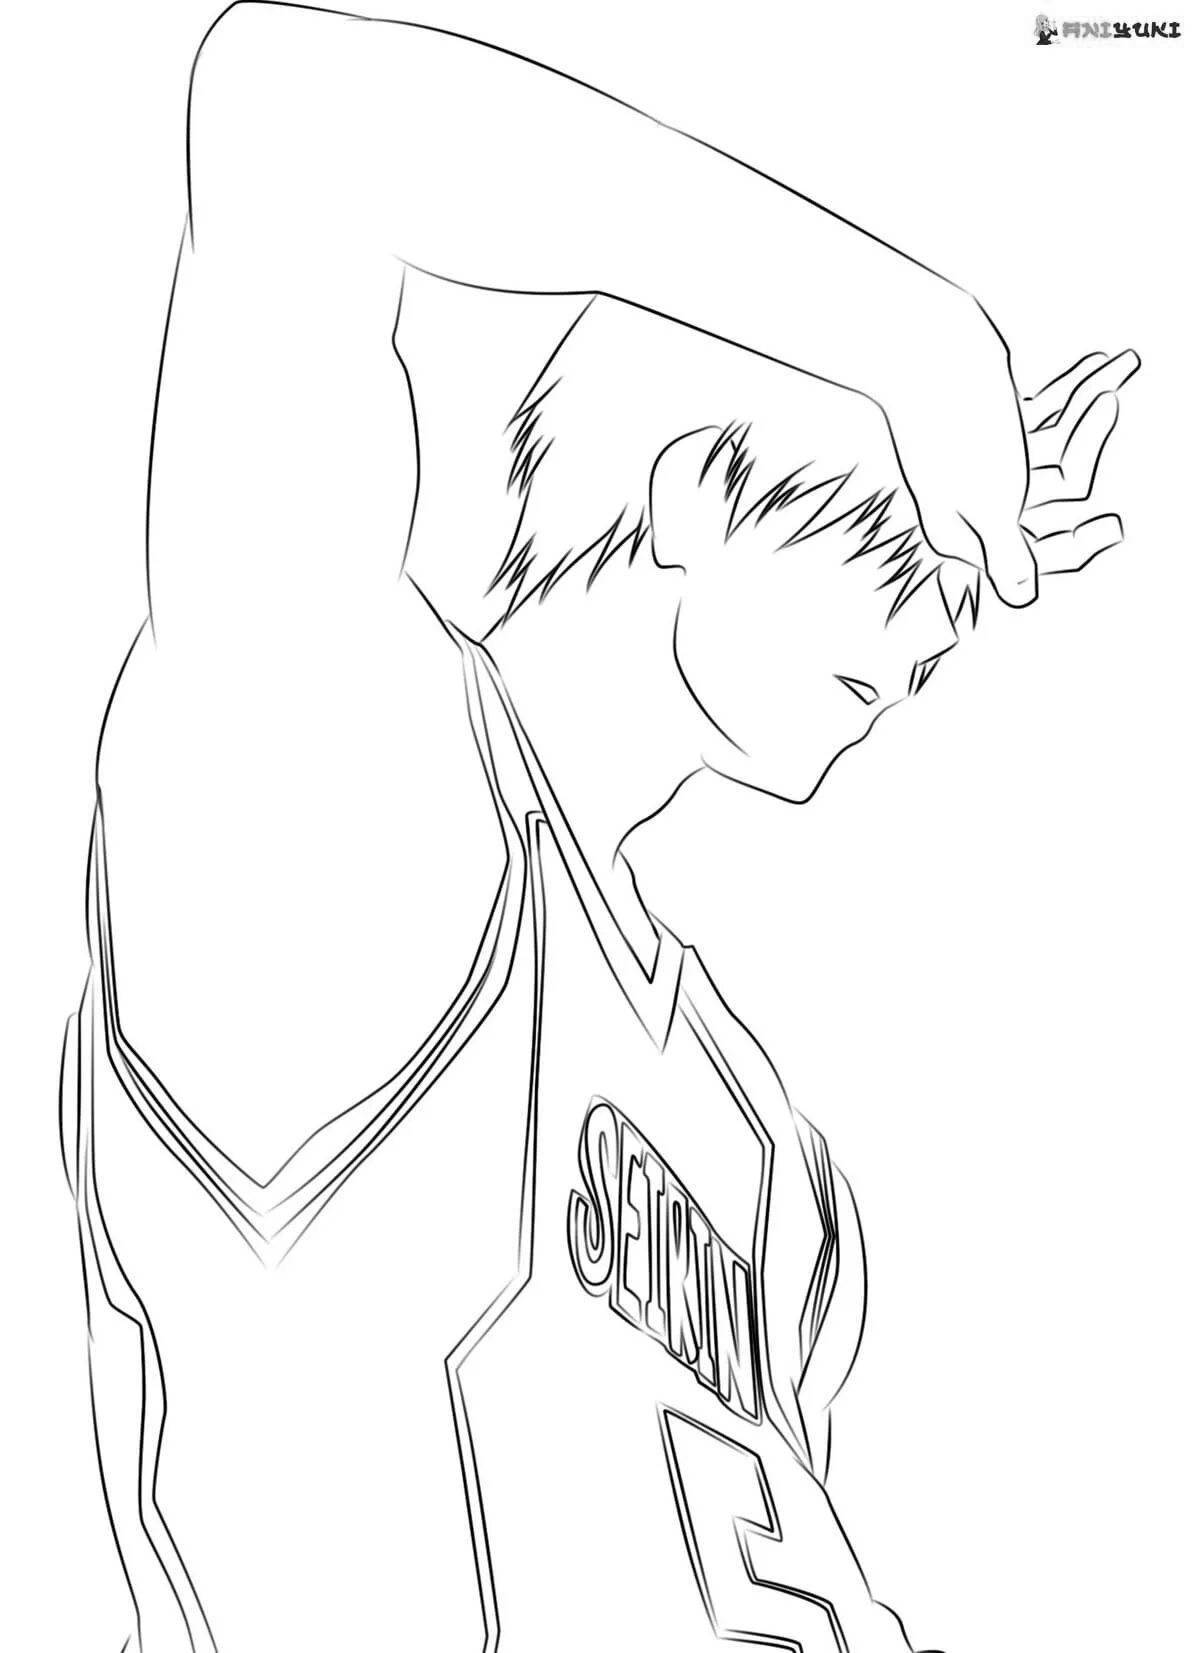 Fabulous kuroko anime basketball coloring page